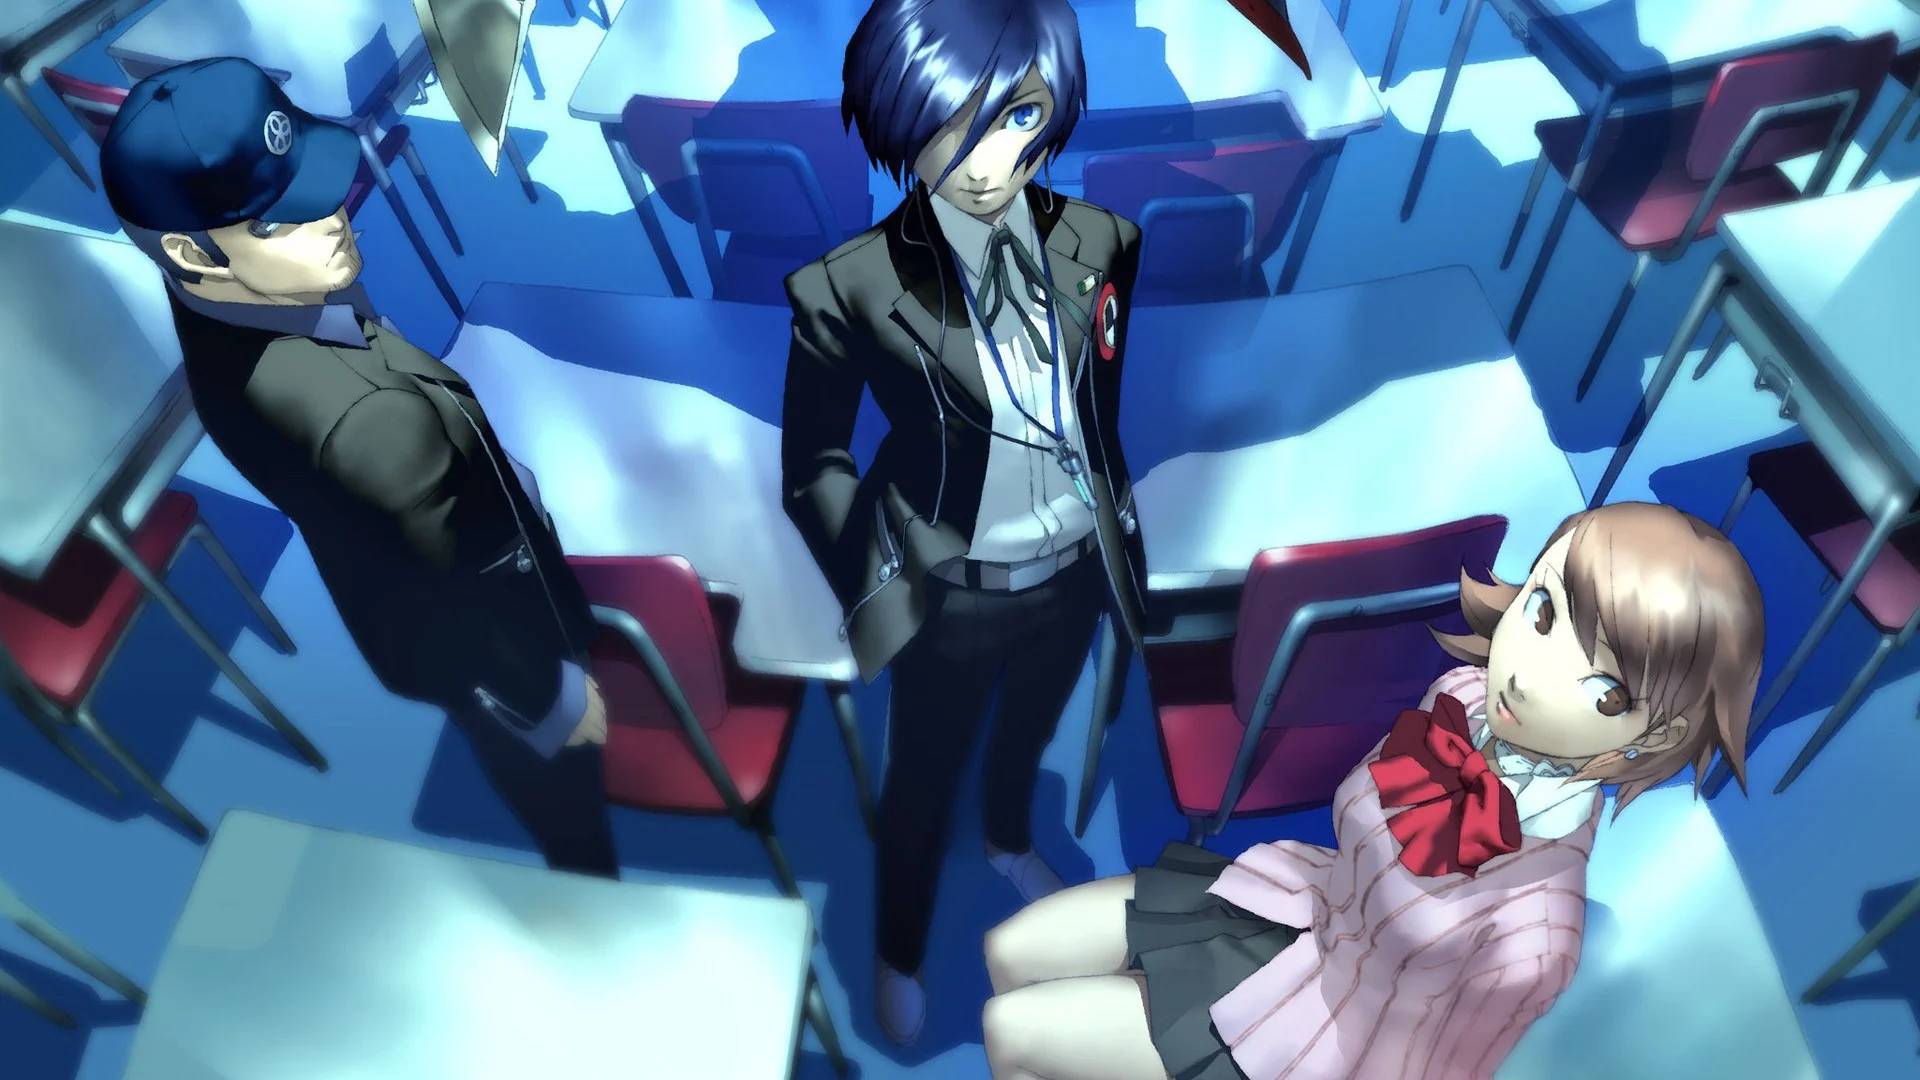 Persona 3 protagonista: Uma imagem mostra o protagonista de Persona 3, um adolescente de cabelo azul em uma roupa escolar